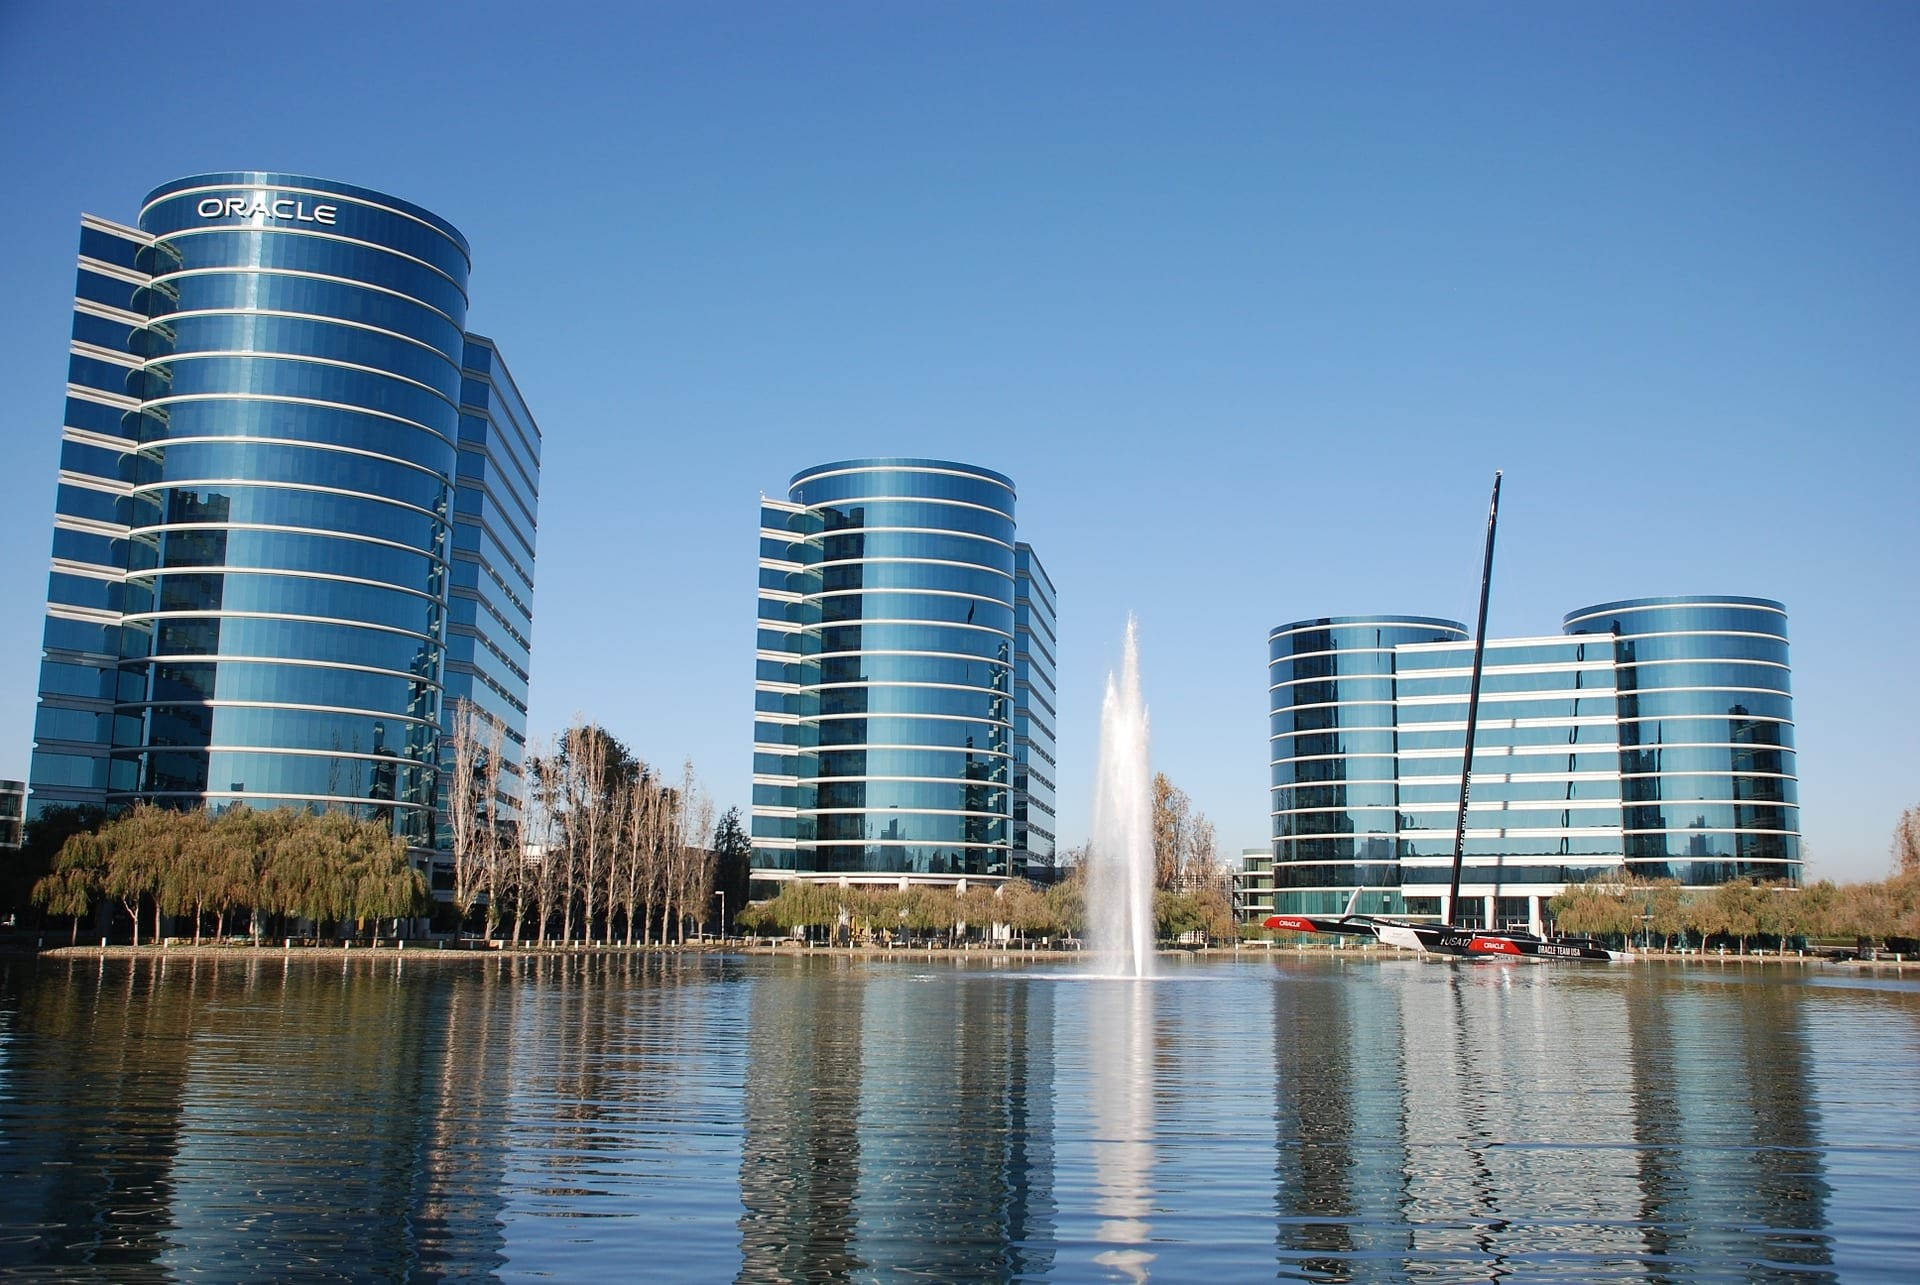 Các toà nhà có thiết kế hình trụ đặc trưng tại trụ sở của Oracle ở thung lũng Silicon. Ảnh: REUTIR